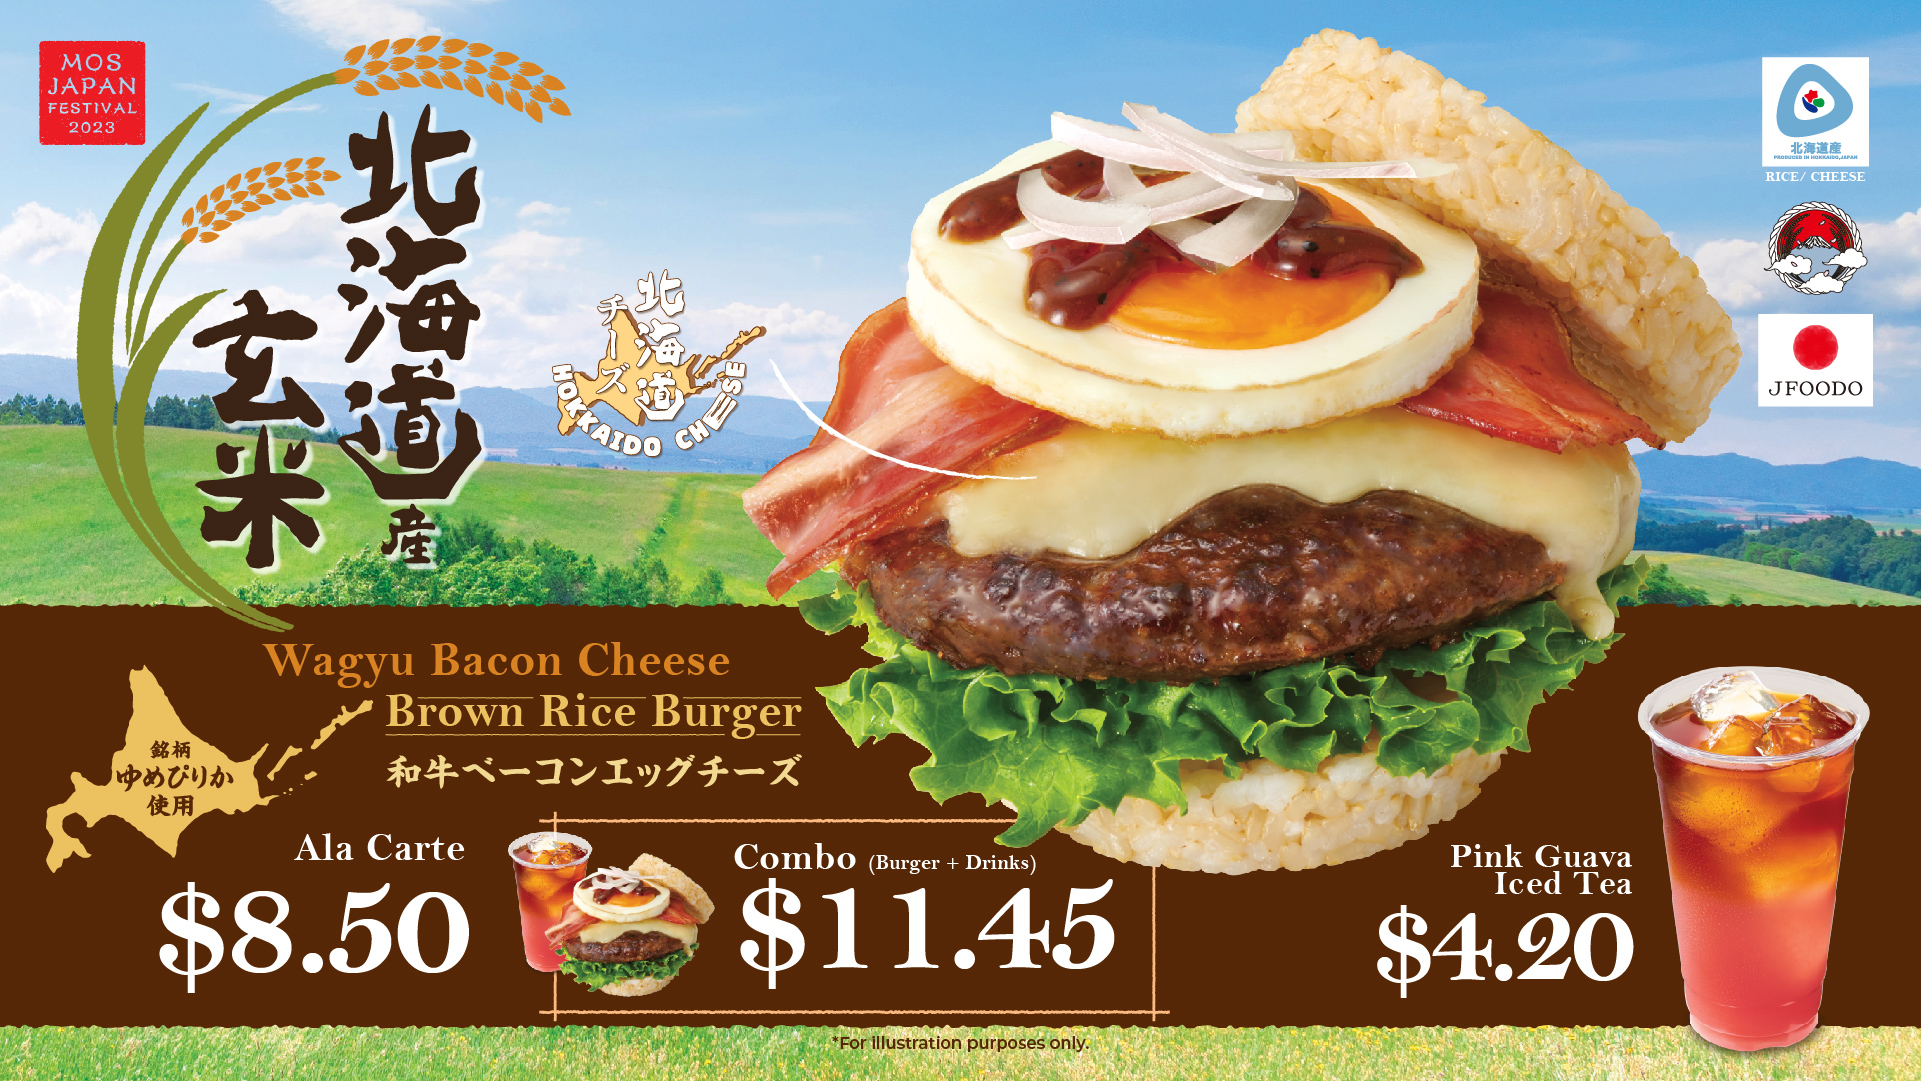 MOS Burger - Wagyu Bacon Cheese Brown Rice Burger